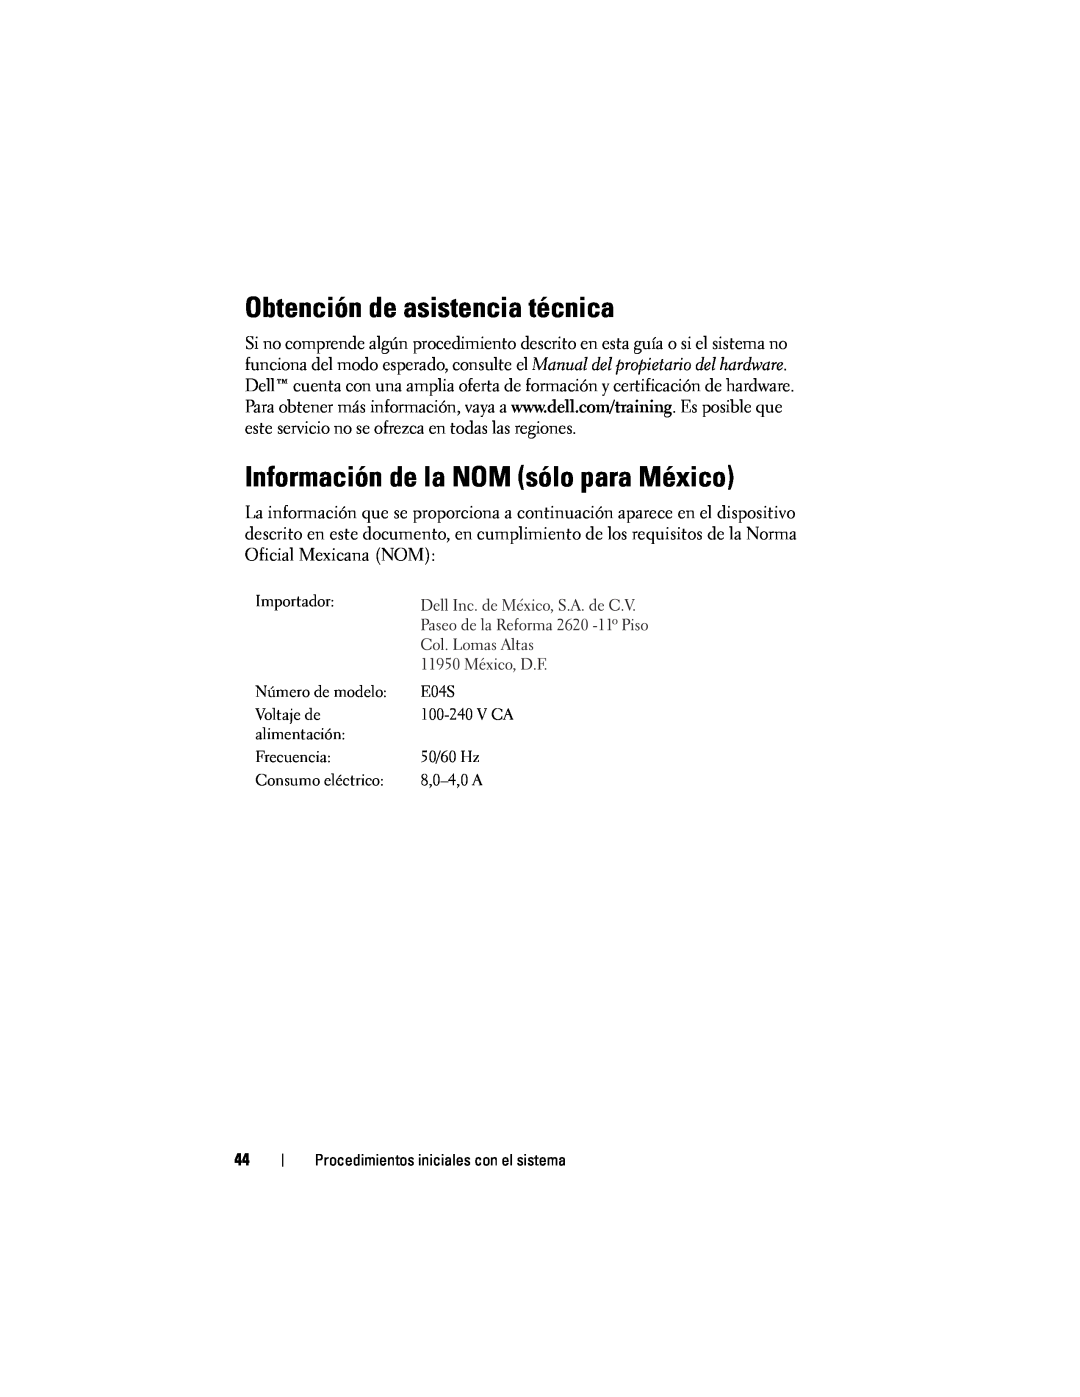 Dell E04S001, N732H manual Obtención de asistencia técnica, Información de la NOM sólo para México, V Ca 